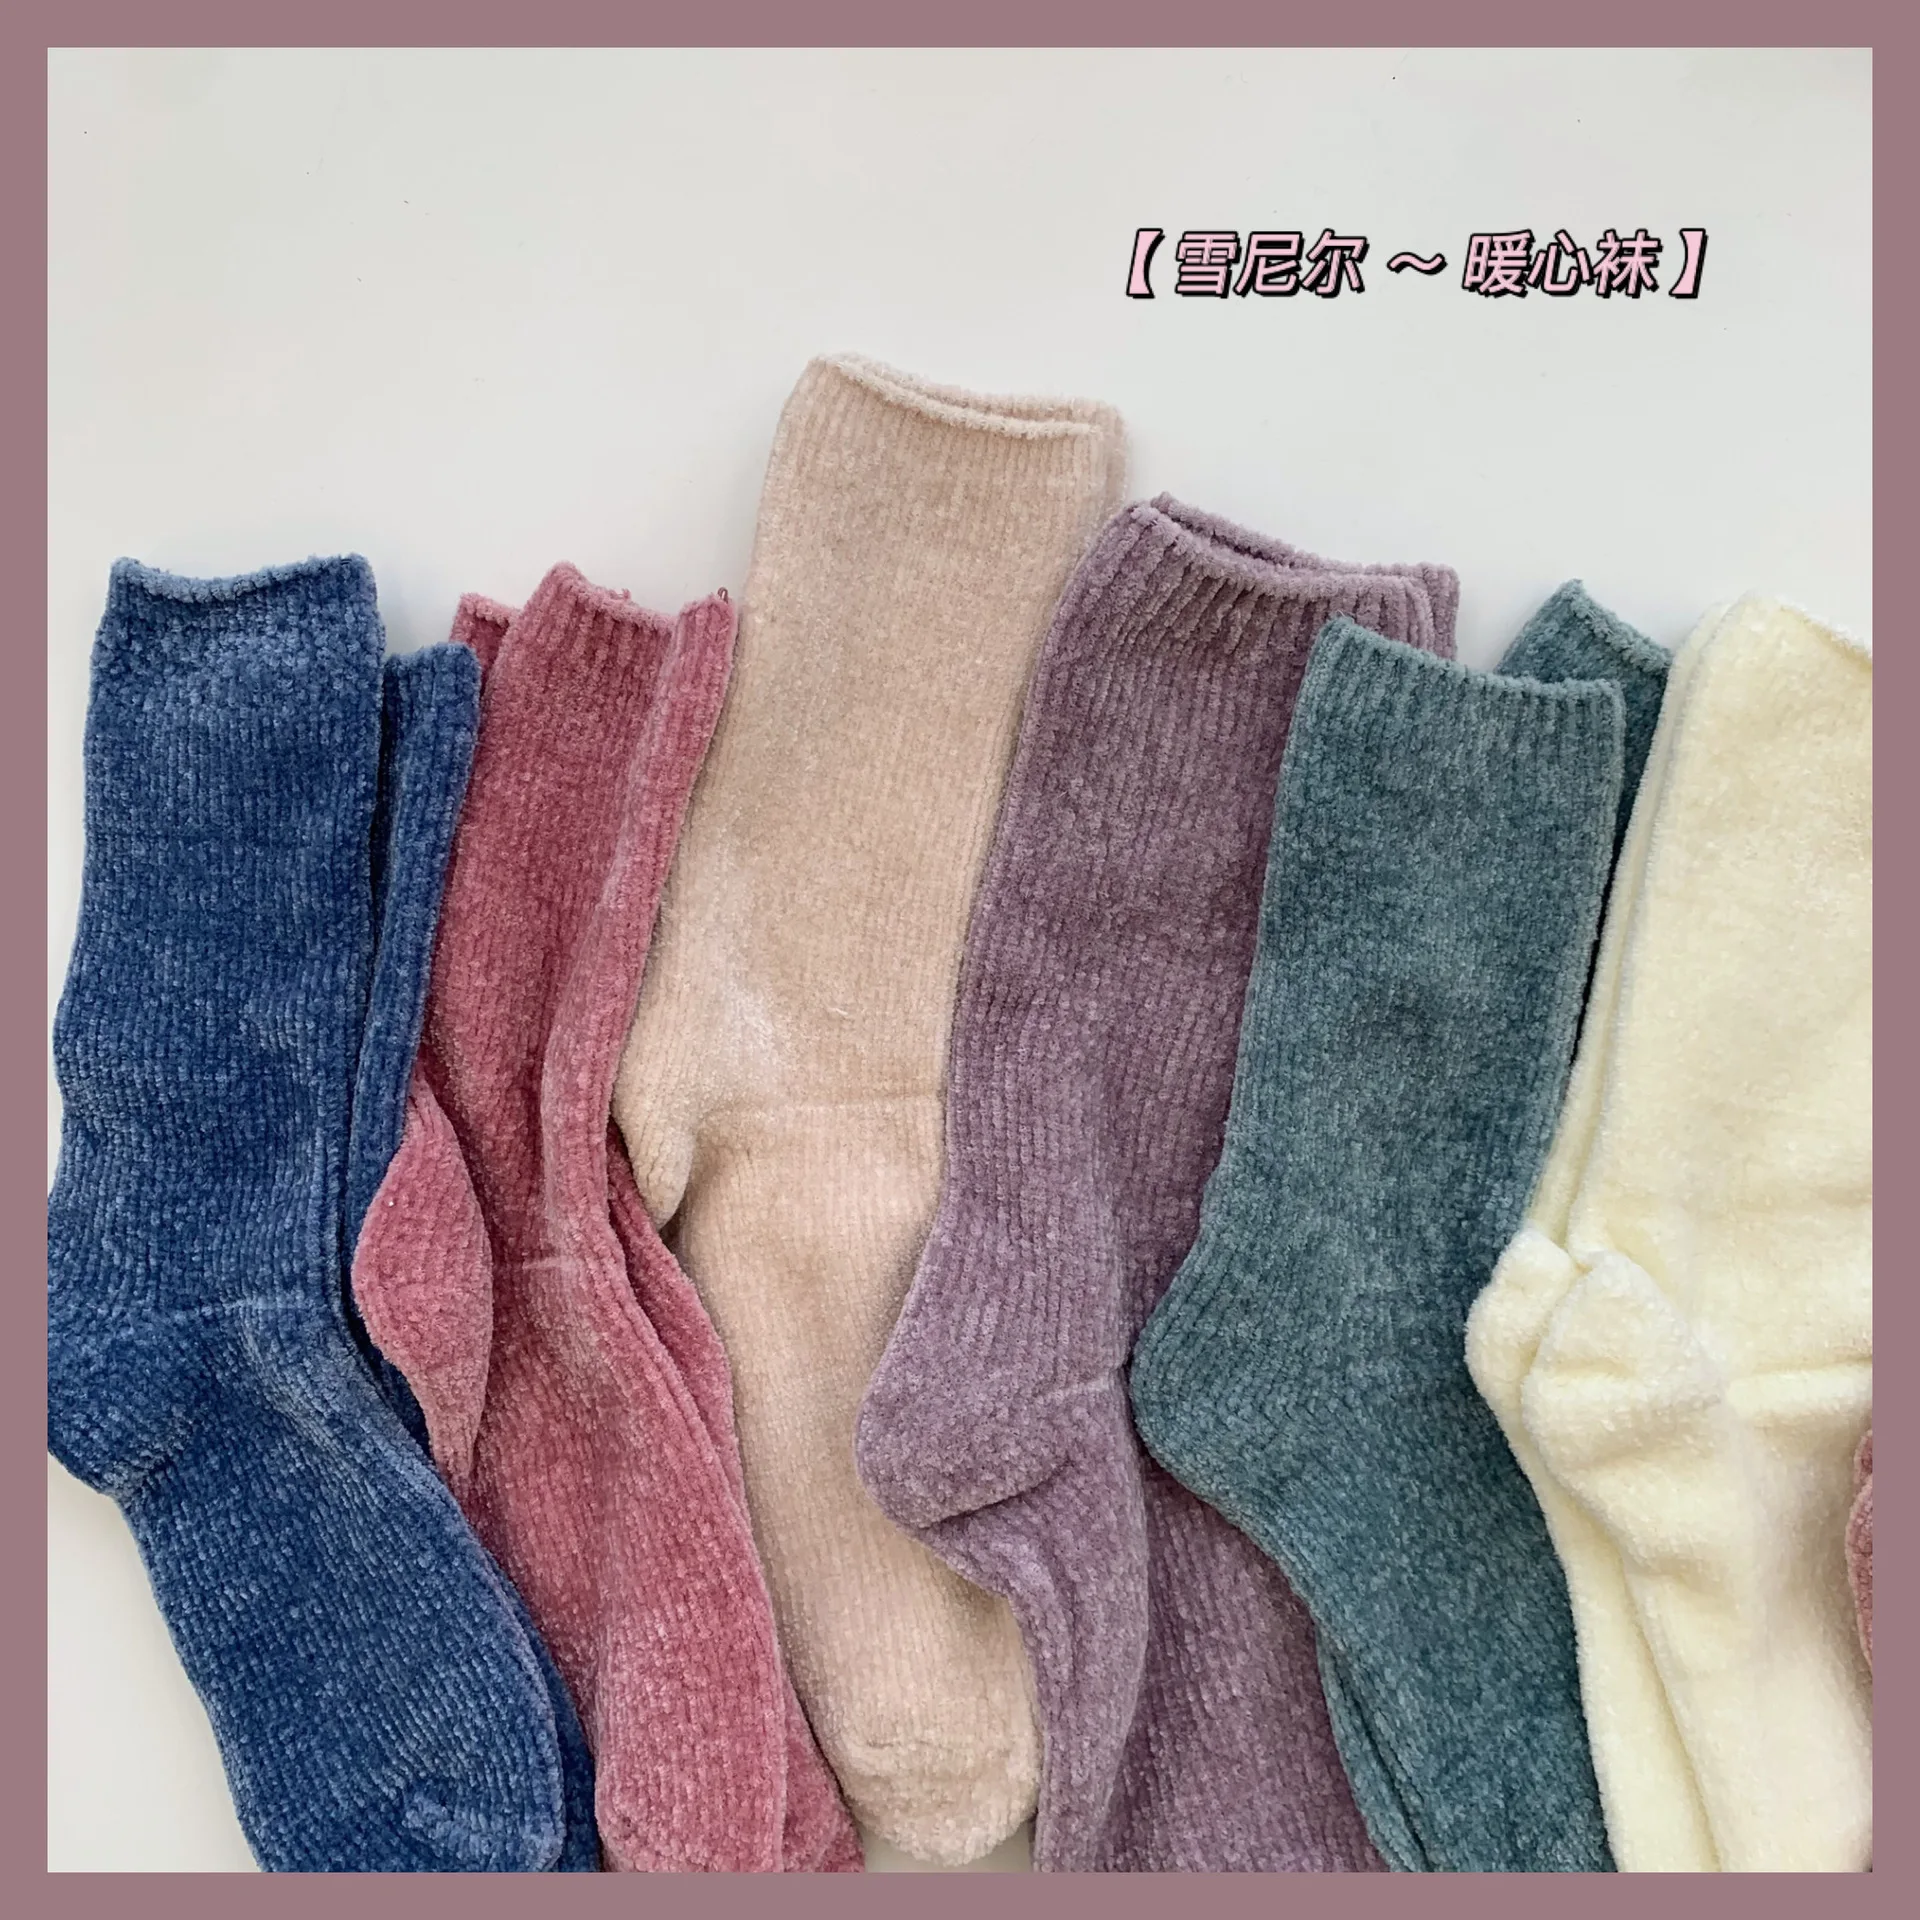 Botas de estilo japonés para mujer, calcetines gruesos para dormir en el suelo, calcetín térmico sólido y cálido para invierno, regalos de Año Nuevo